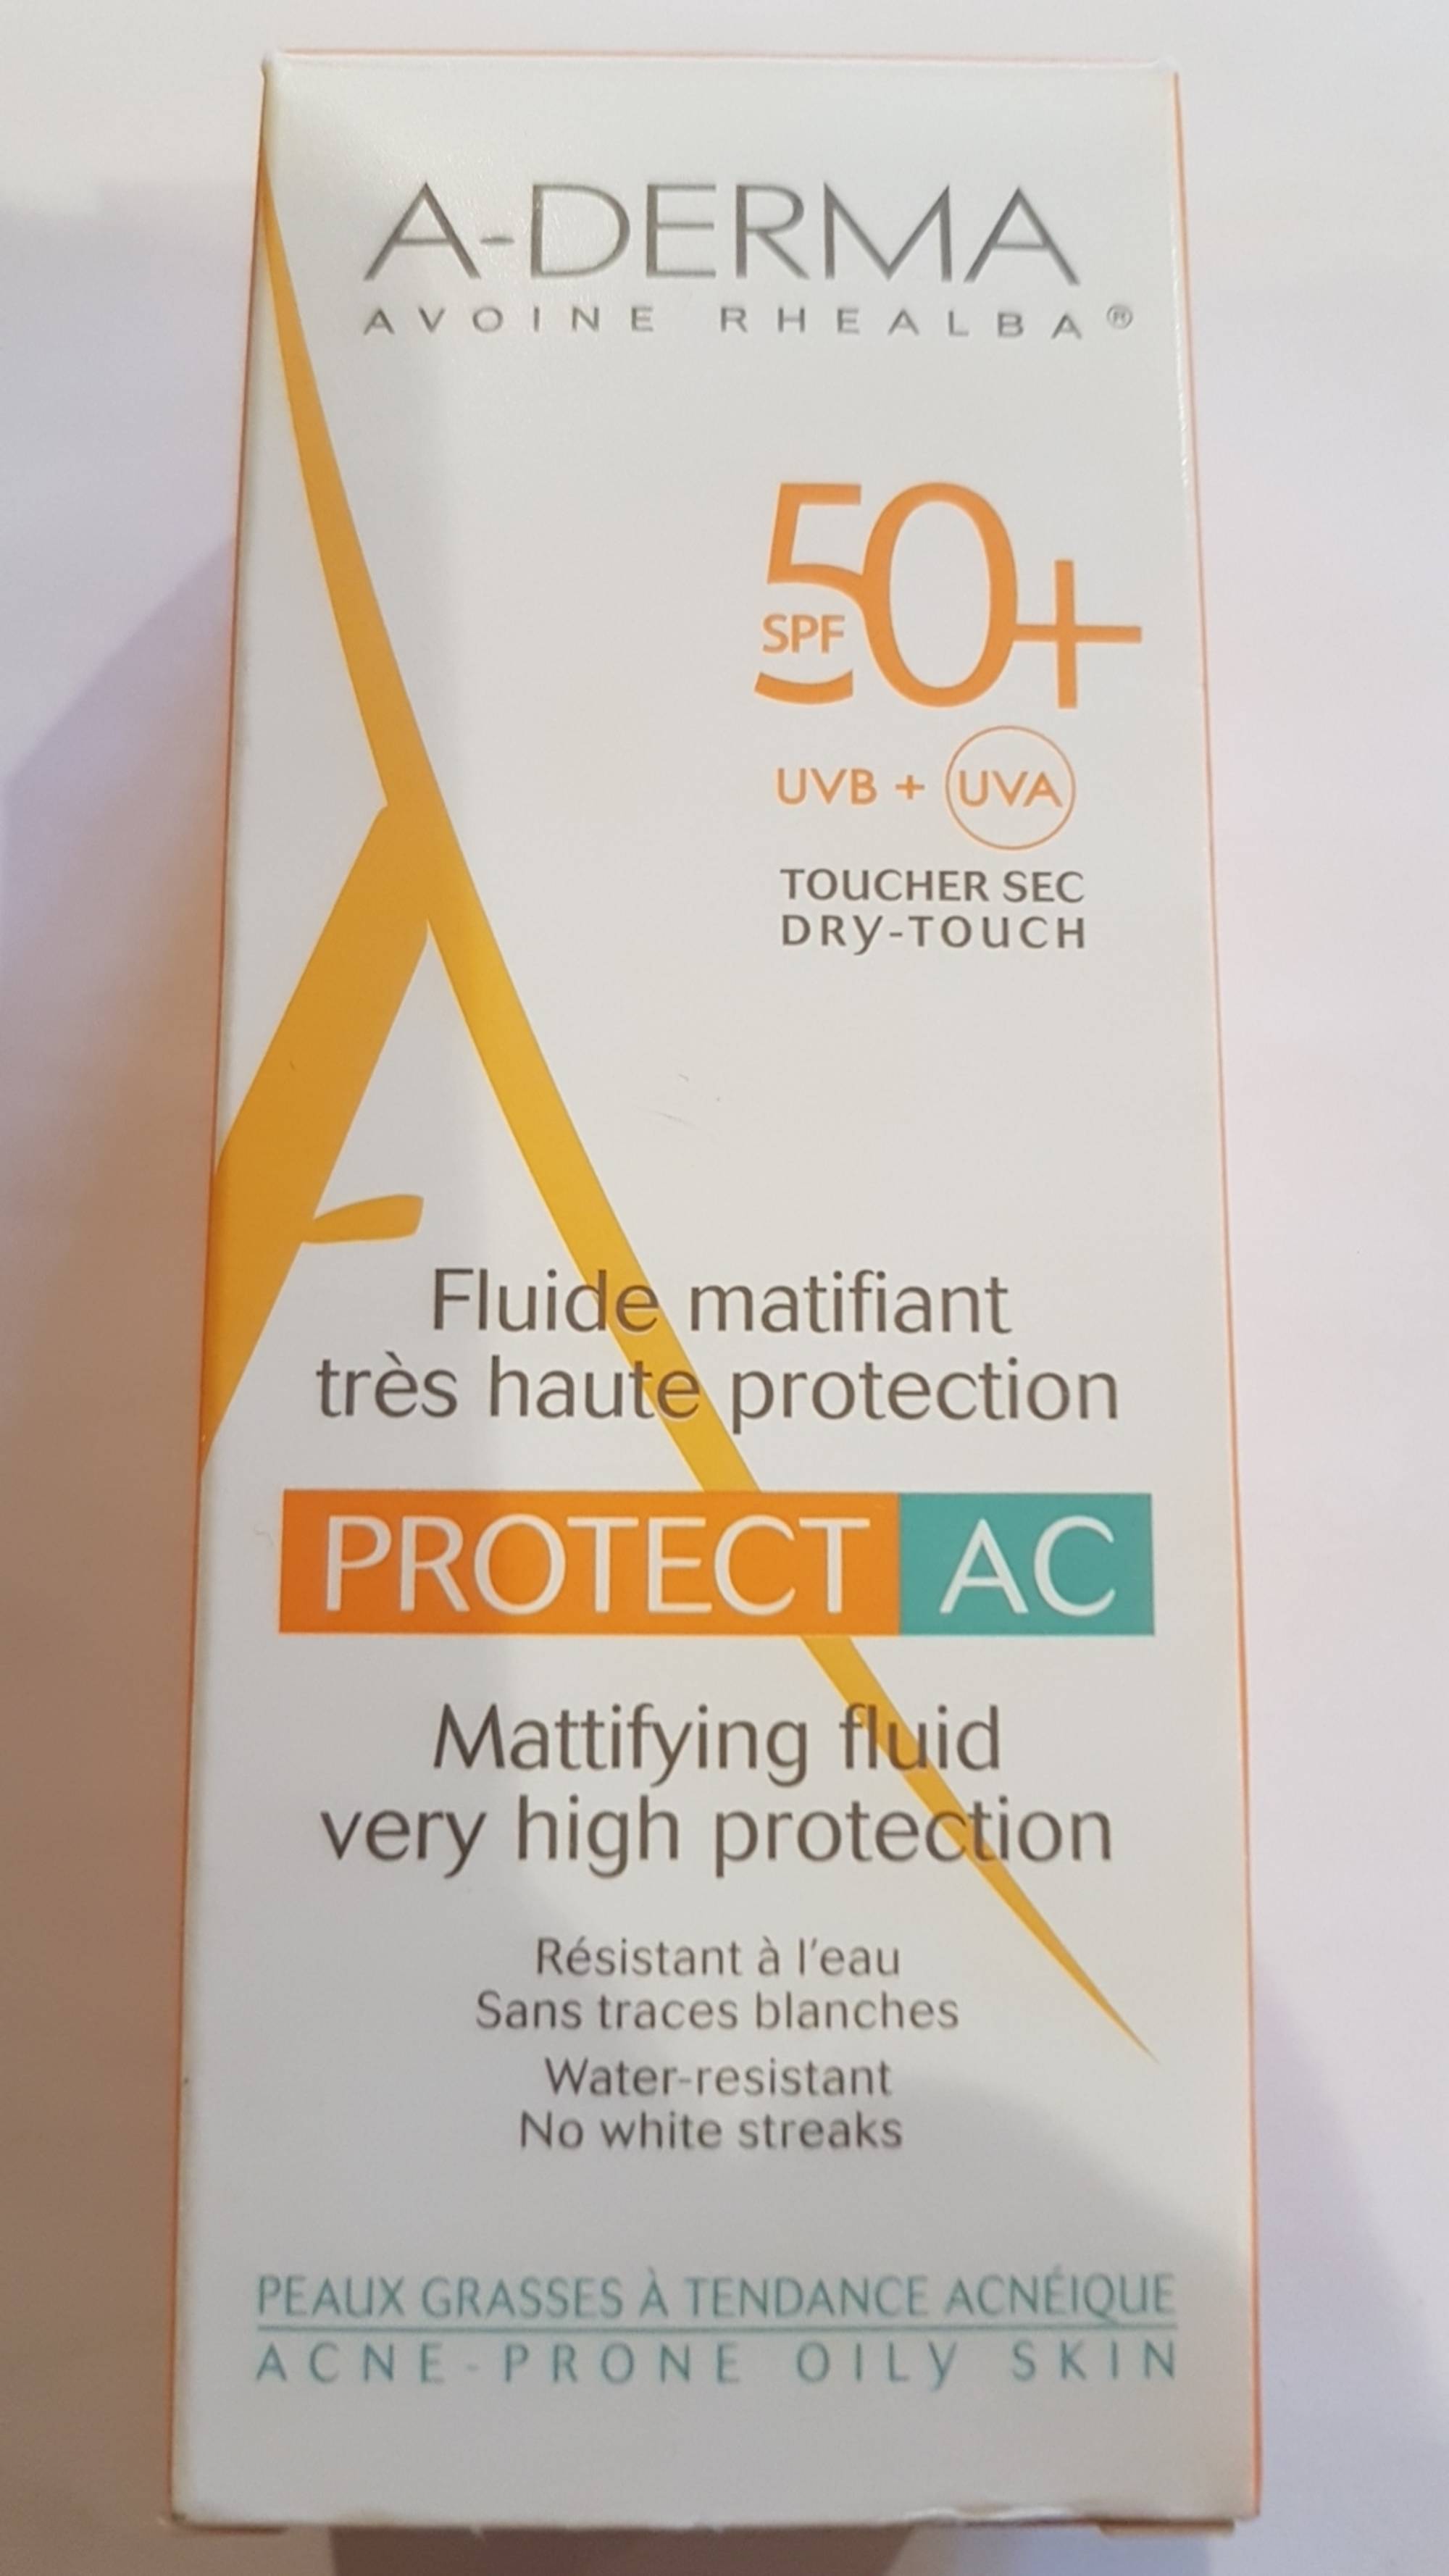 A-DERMA - Protect AC - Fluide matifiant très haute protection SPF 50+